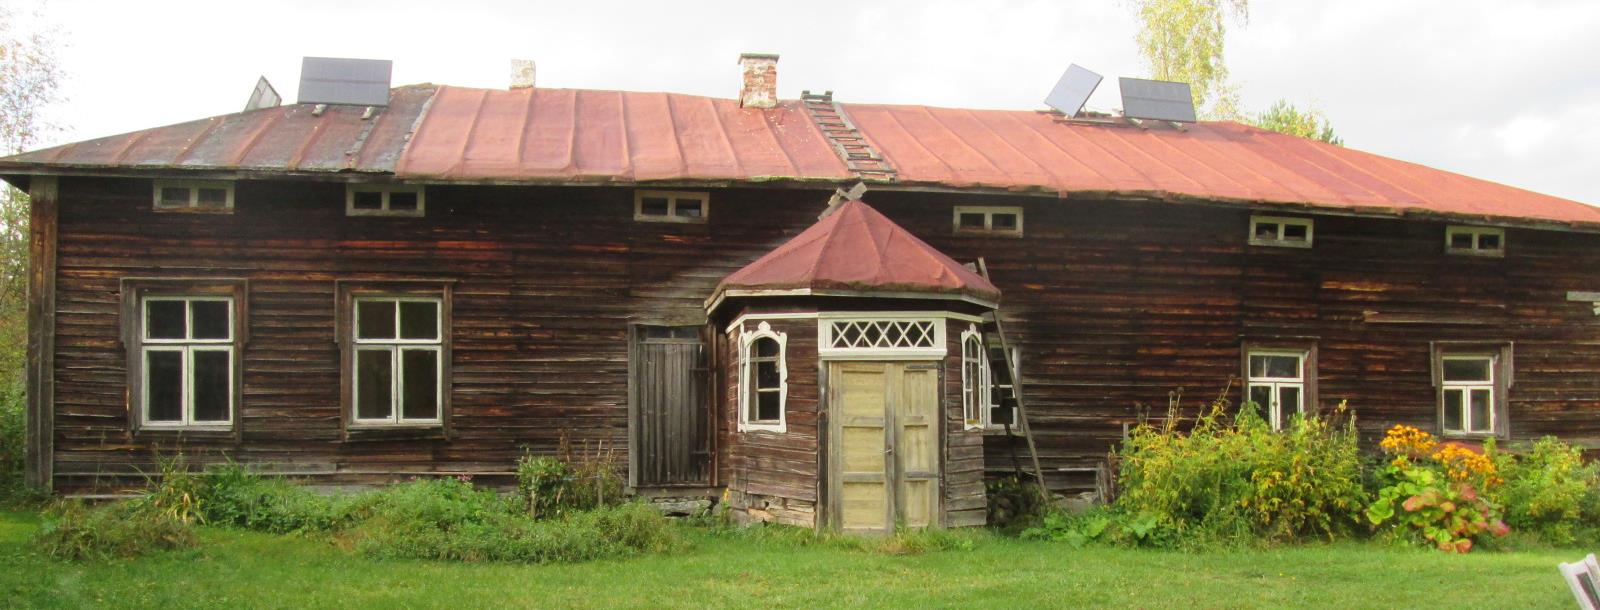 Pirttimäki, päärakennus v. 1860, aitta v. 1817. Tila perustettu 1700-luvulla ja toimi maatilana 1970-luvulle saakka.